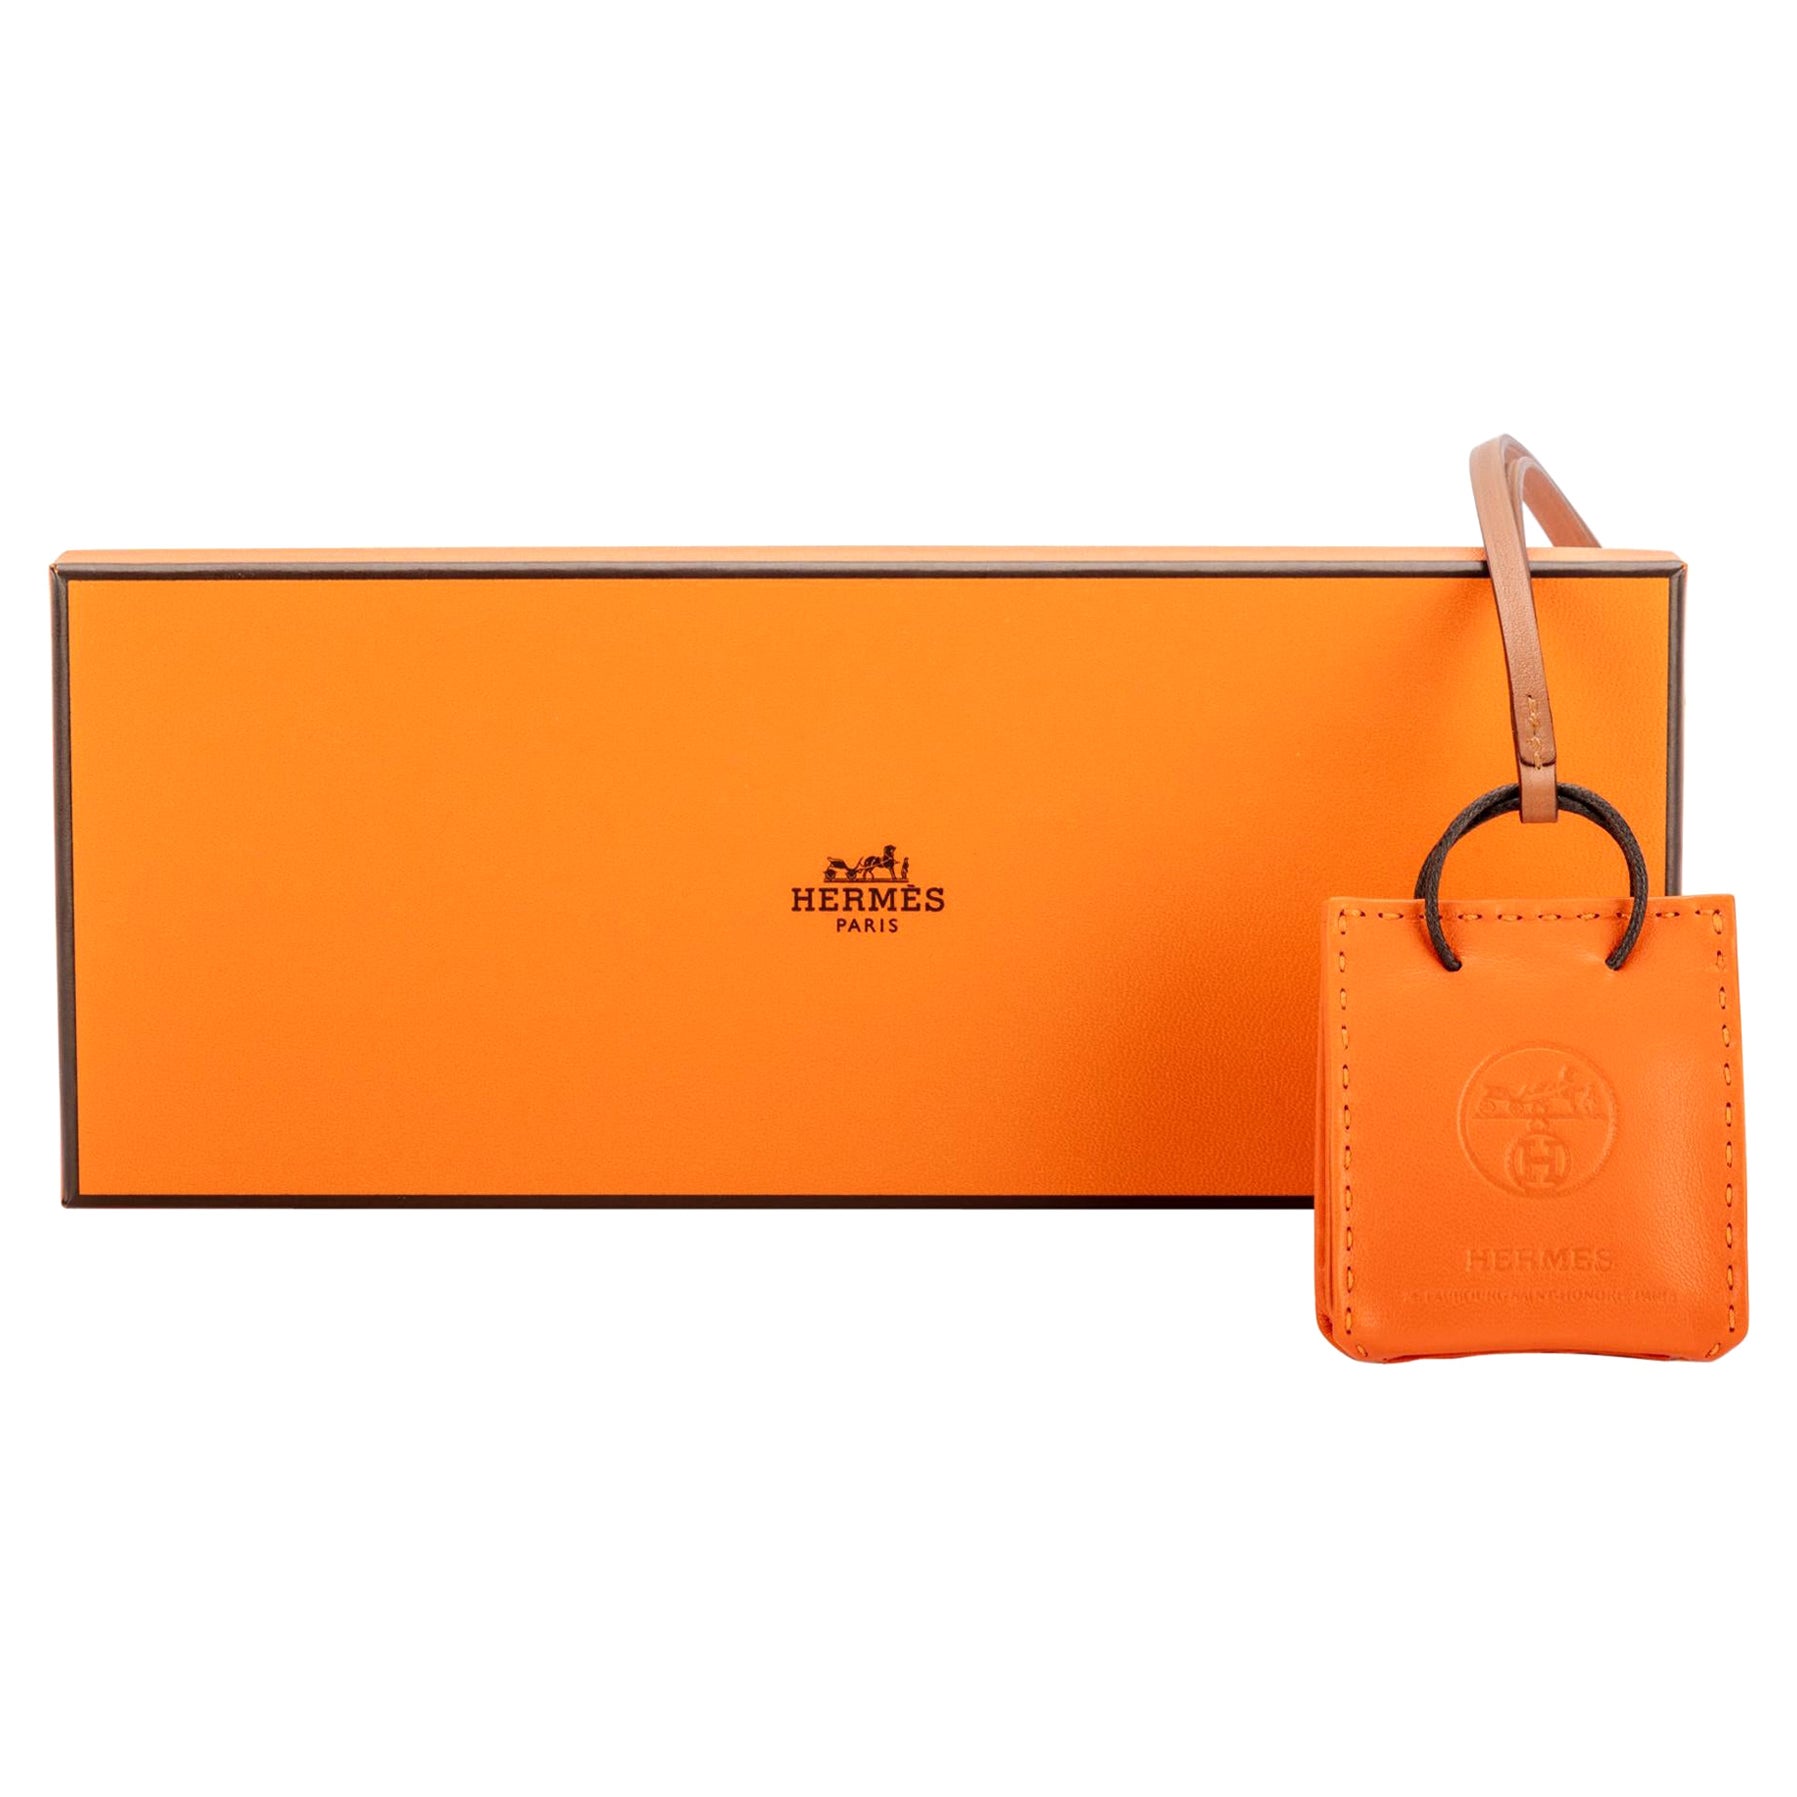  Accessoire de sac Hermès orange rare, neuf dans sa boîte en vente